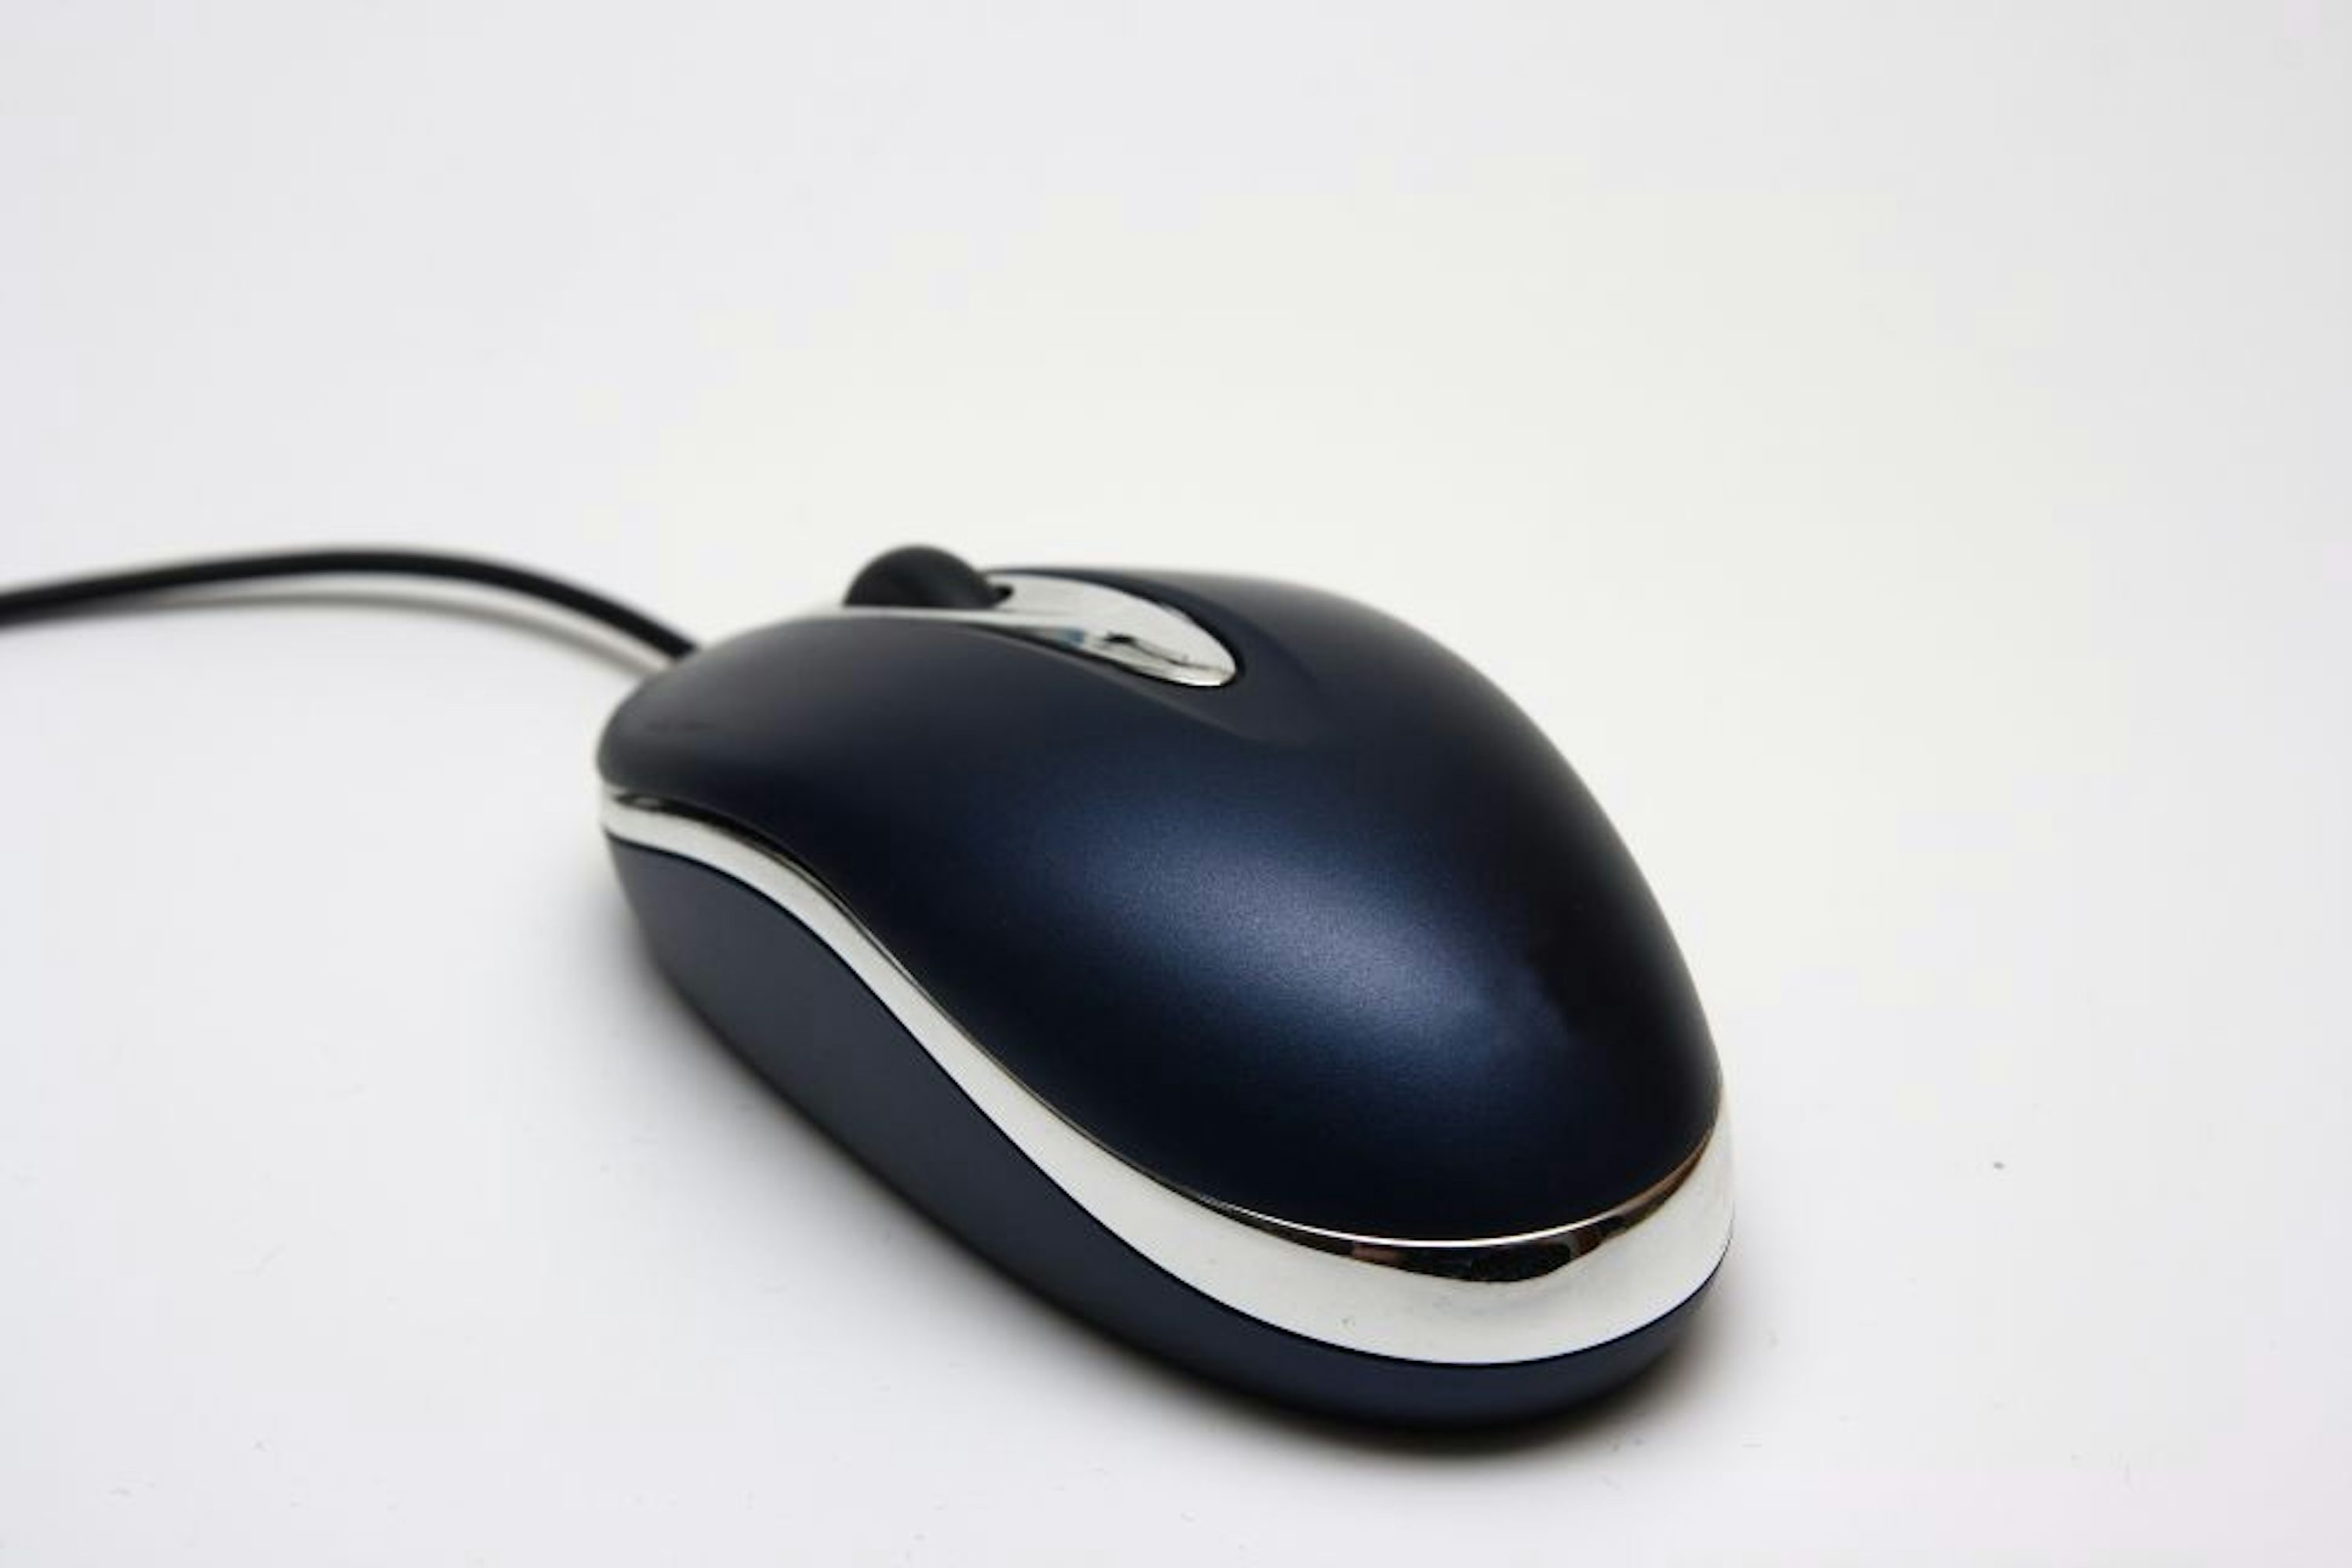 Sibm mouse. Мышь компьютерная. Компютернаямышь. Мышь компьютера. Мышка для компьютера.